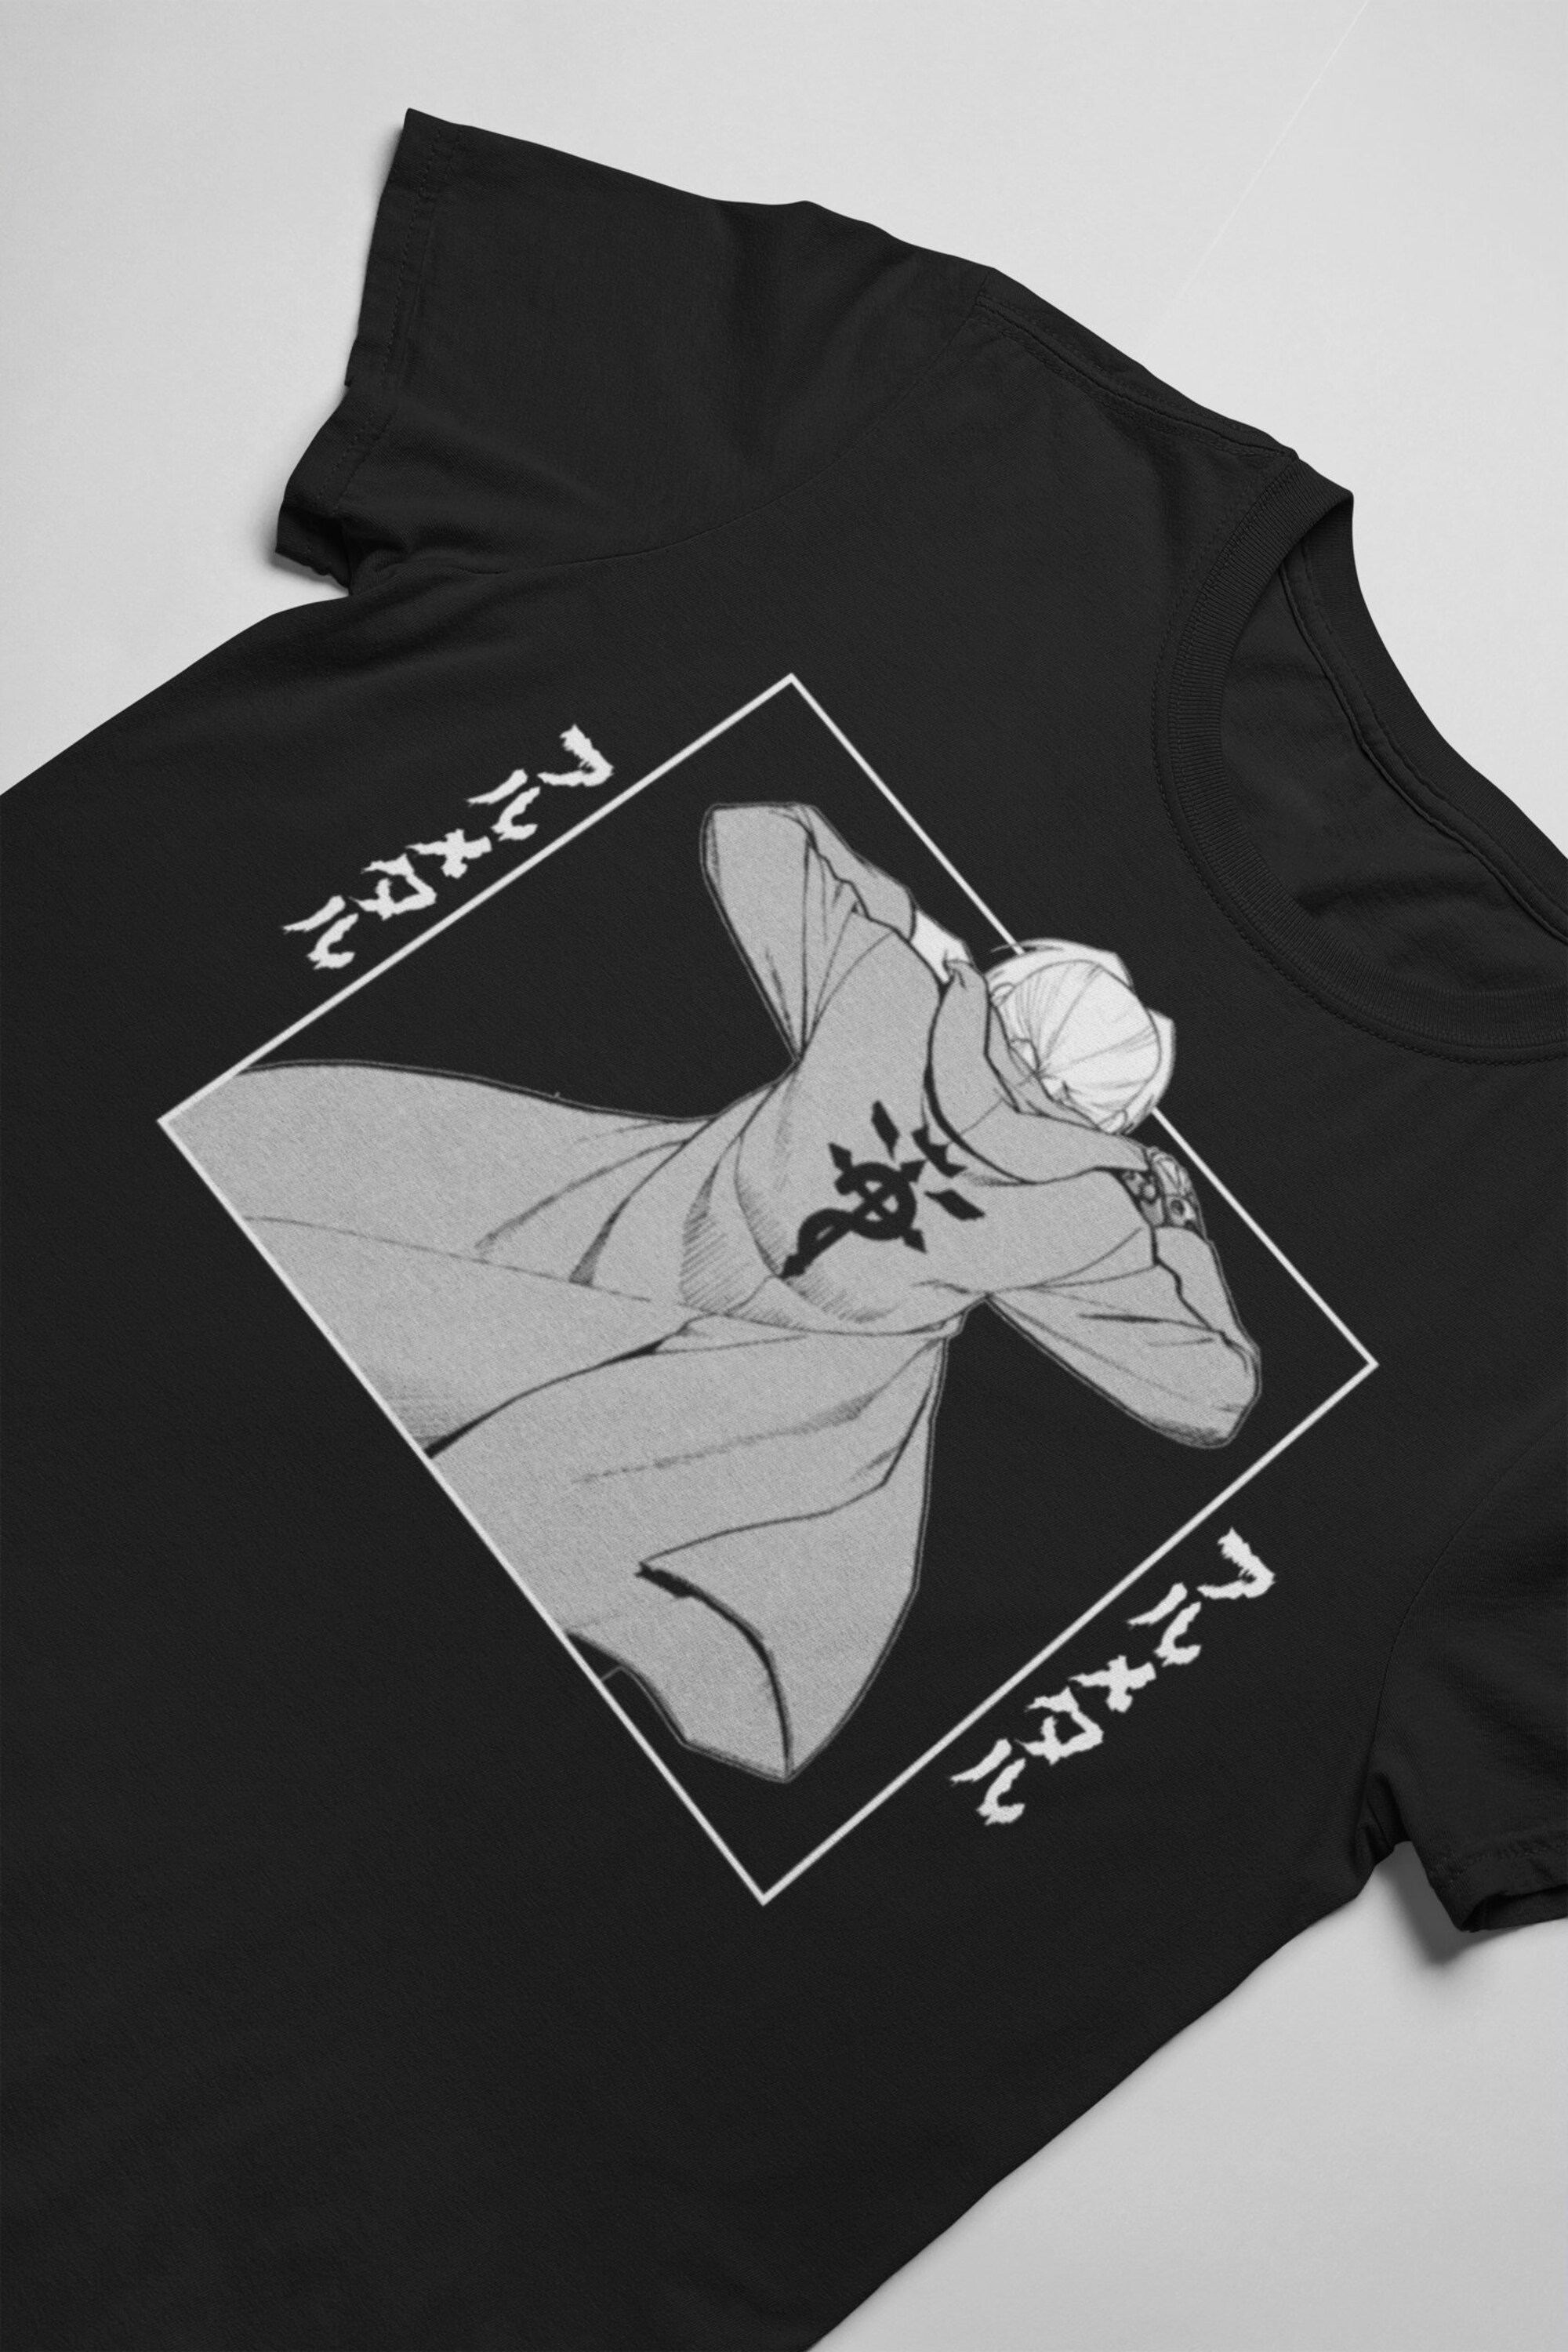 Discover Full metal alchemist Brother hood anime manga unisex tshirt